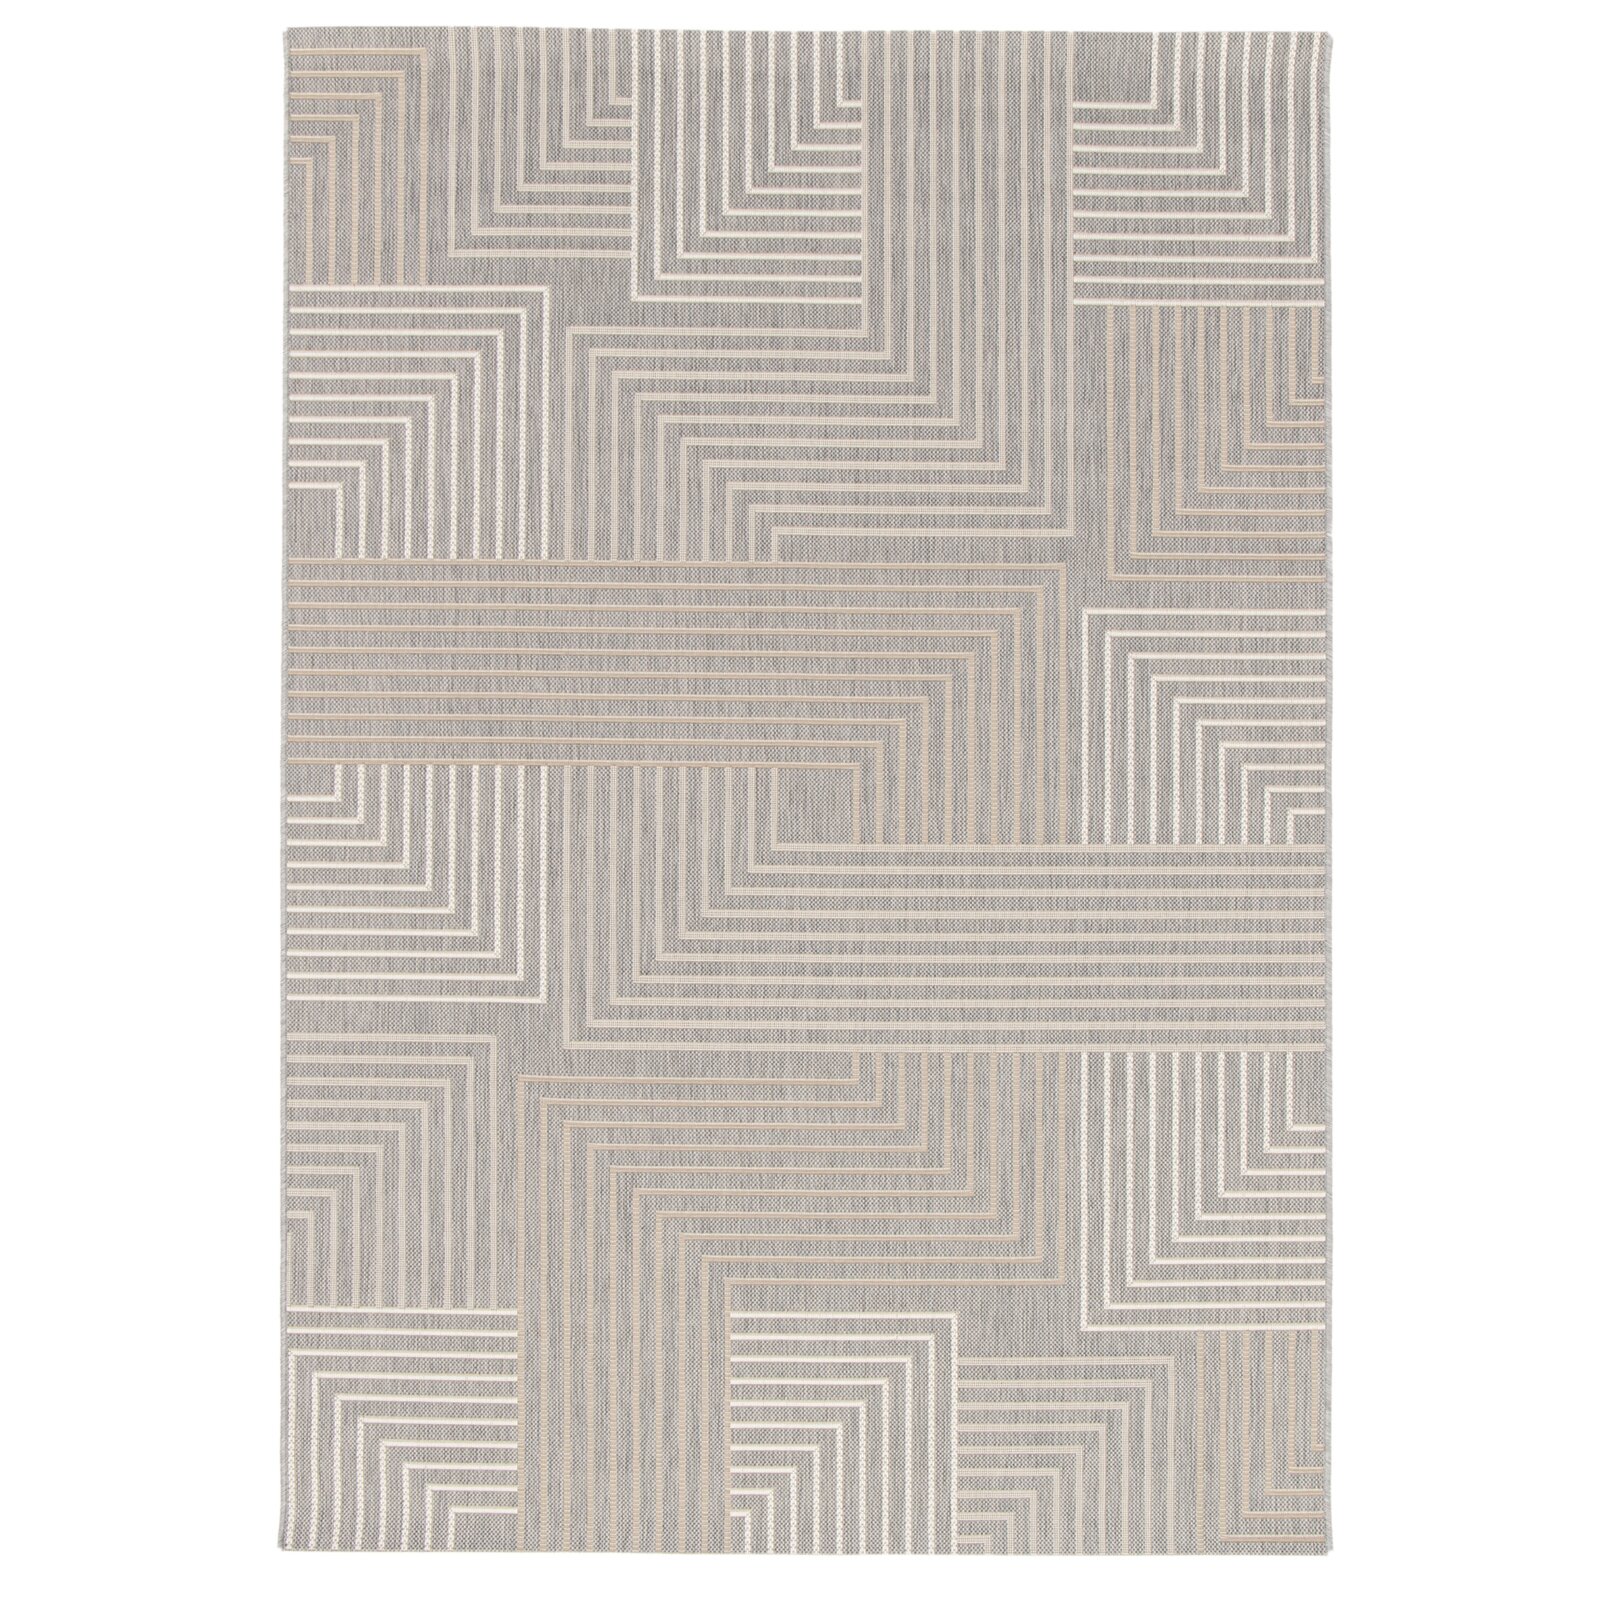 In-/Outdoorteppich - graumix - Linien - 80x150 cm | Online bei ROLLER kaufen